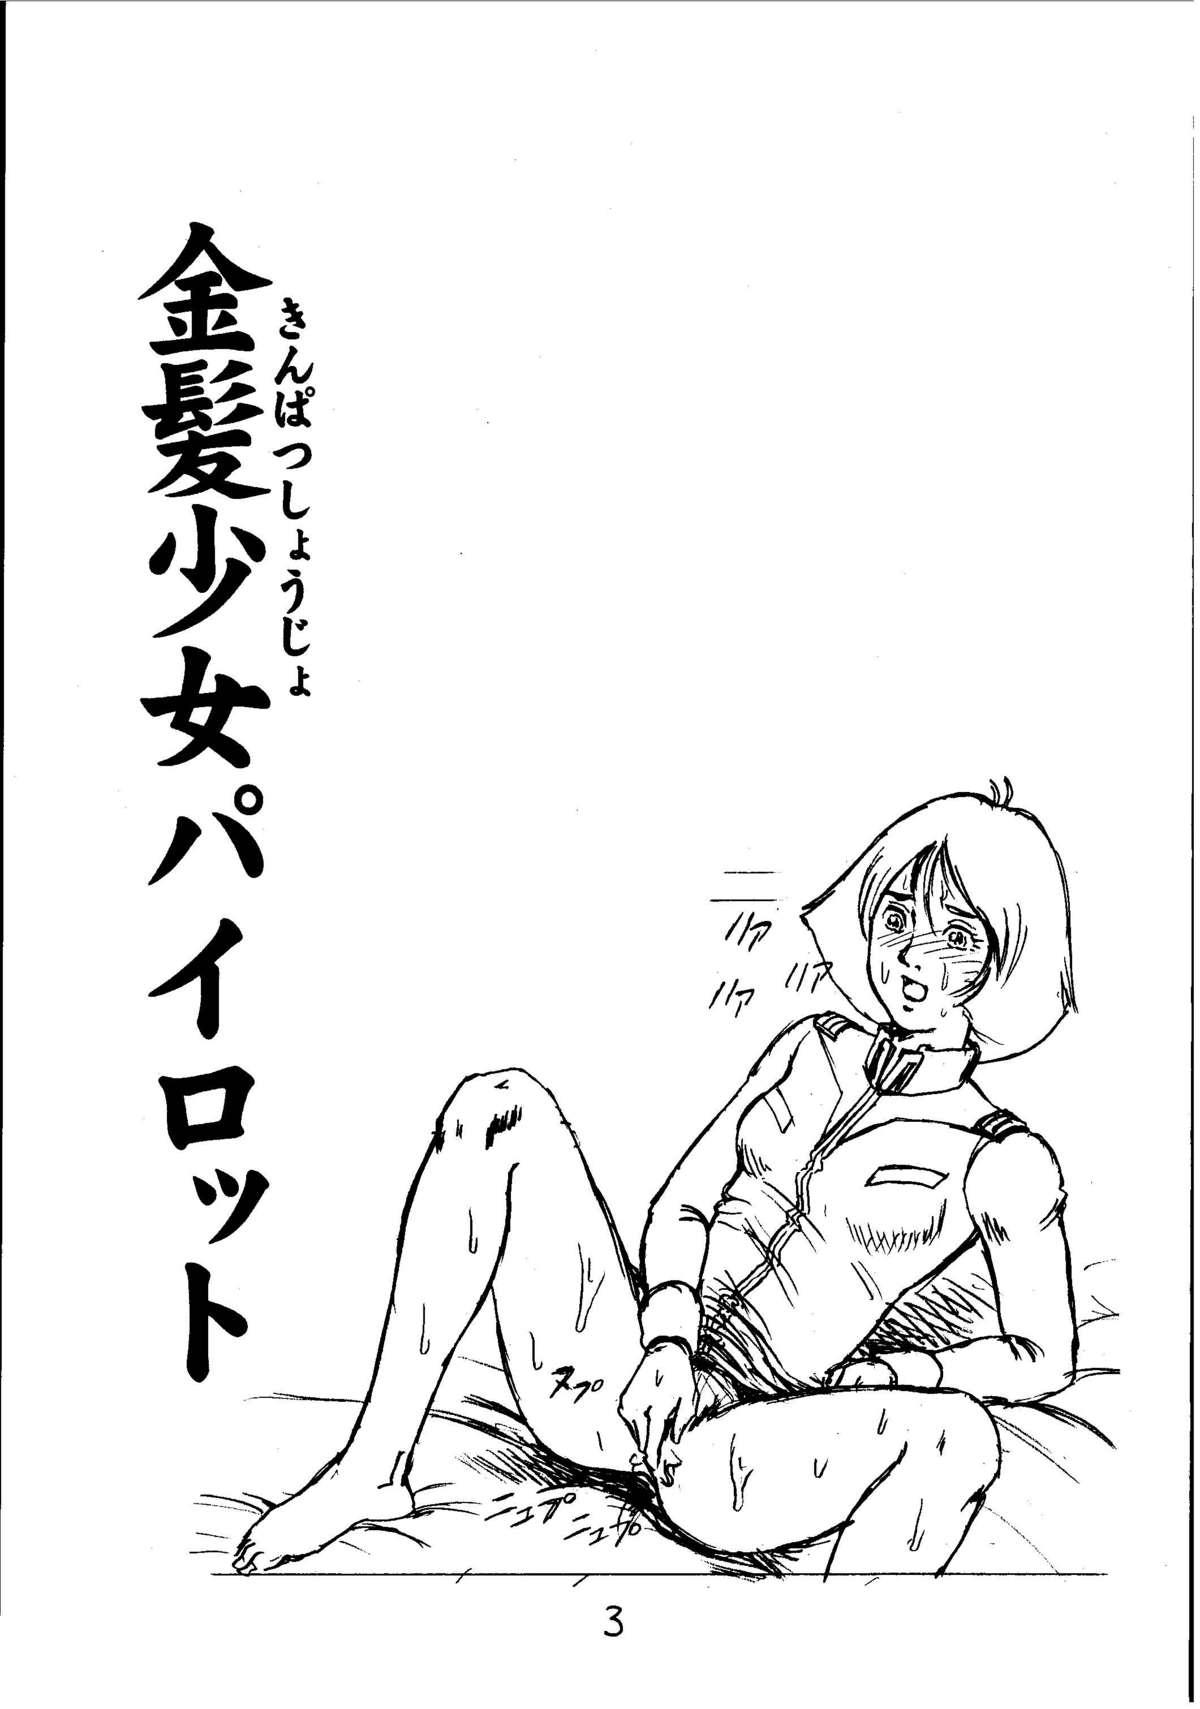 Dirty Kinpatsu Shoujo Pilot - Mobile suit gundam Animated - Page 2